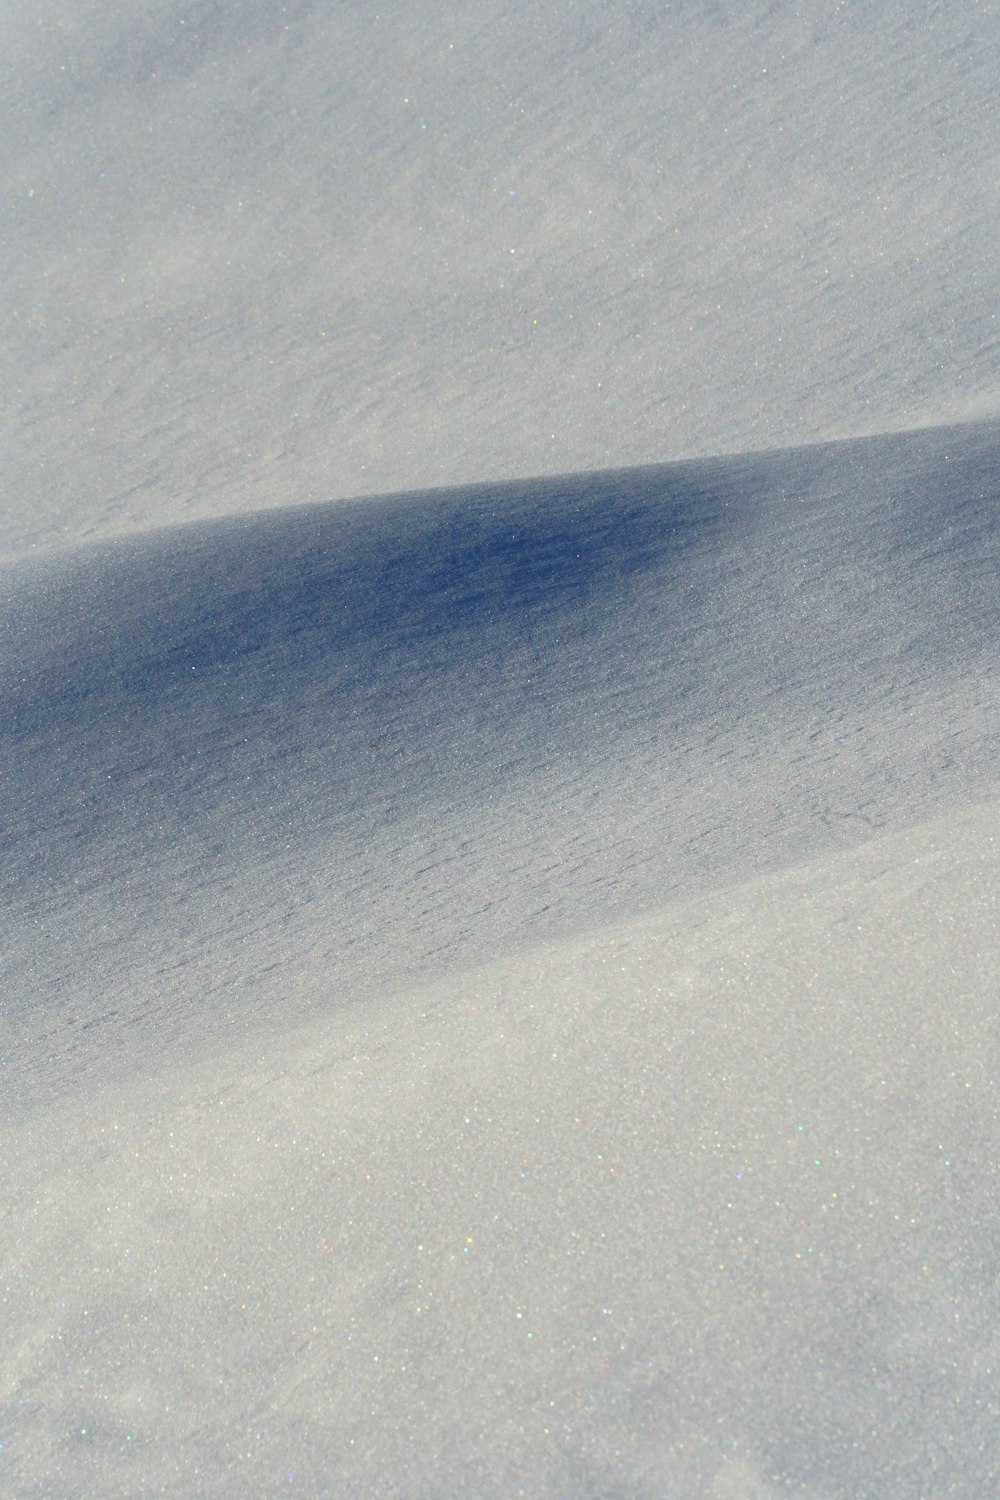 uma pessoa montando uma prancha de snowboard por uma encosta coberta de neve